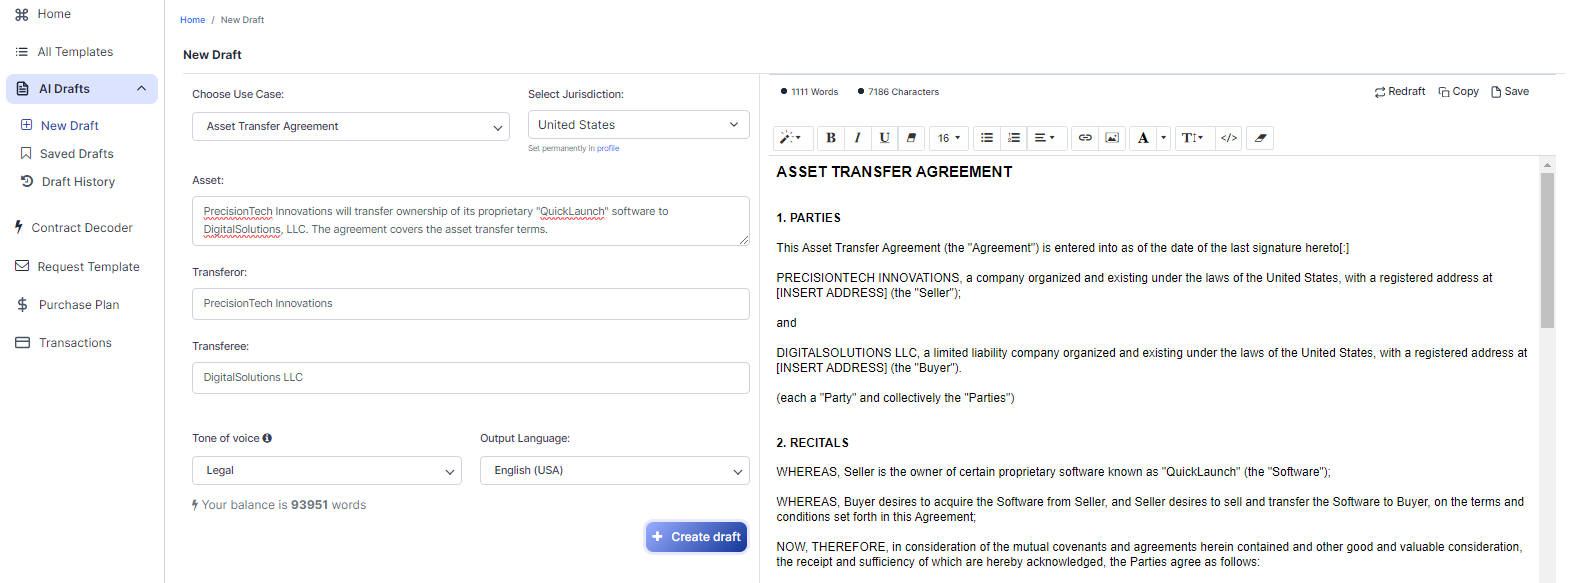 Asset Transfer Agreement template